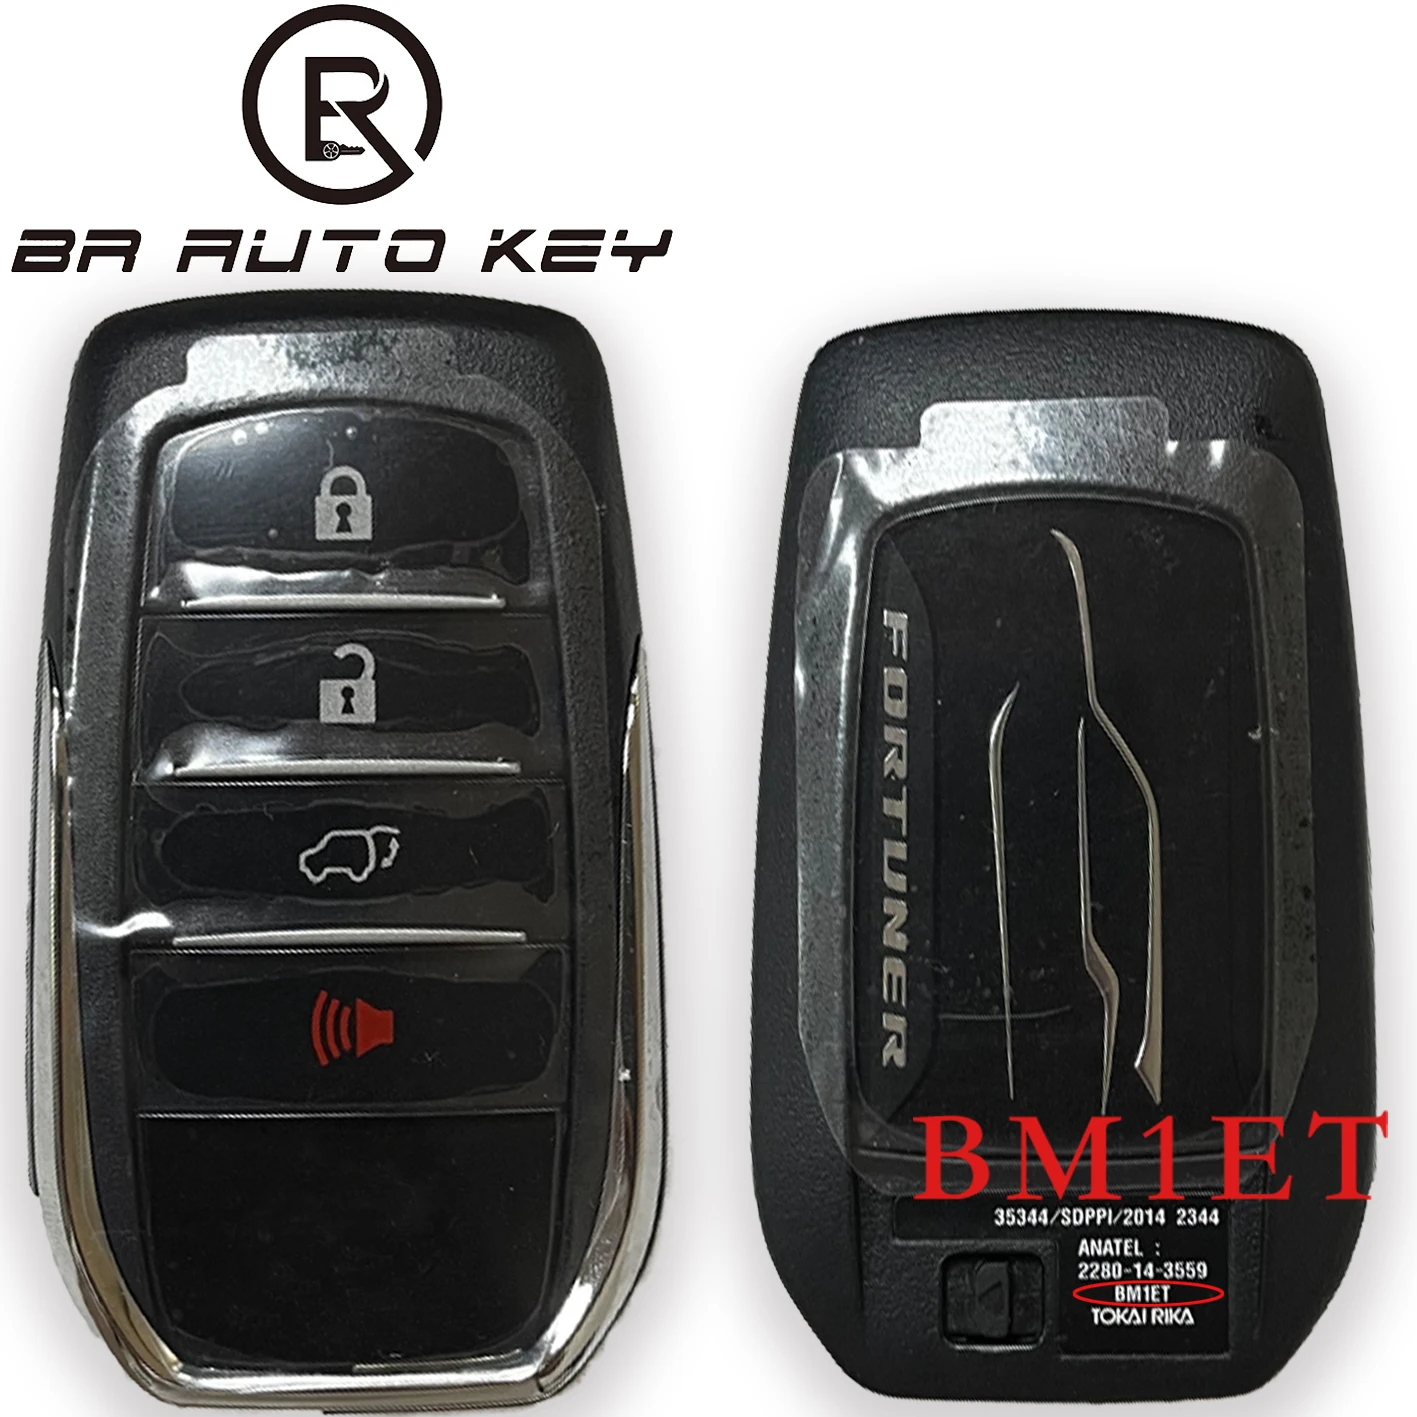 OEM Smart Remote Car Key for Toyota Fortuner SW4 2015 2016 2017 2018 Intelligent key 0182 Board BM1ET 312/314MHZ 434MHZ H CHIP